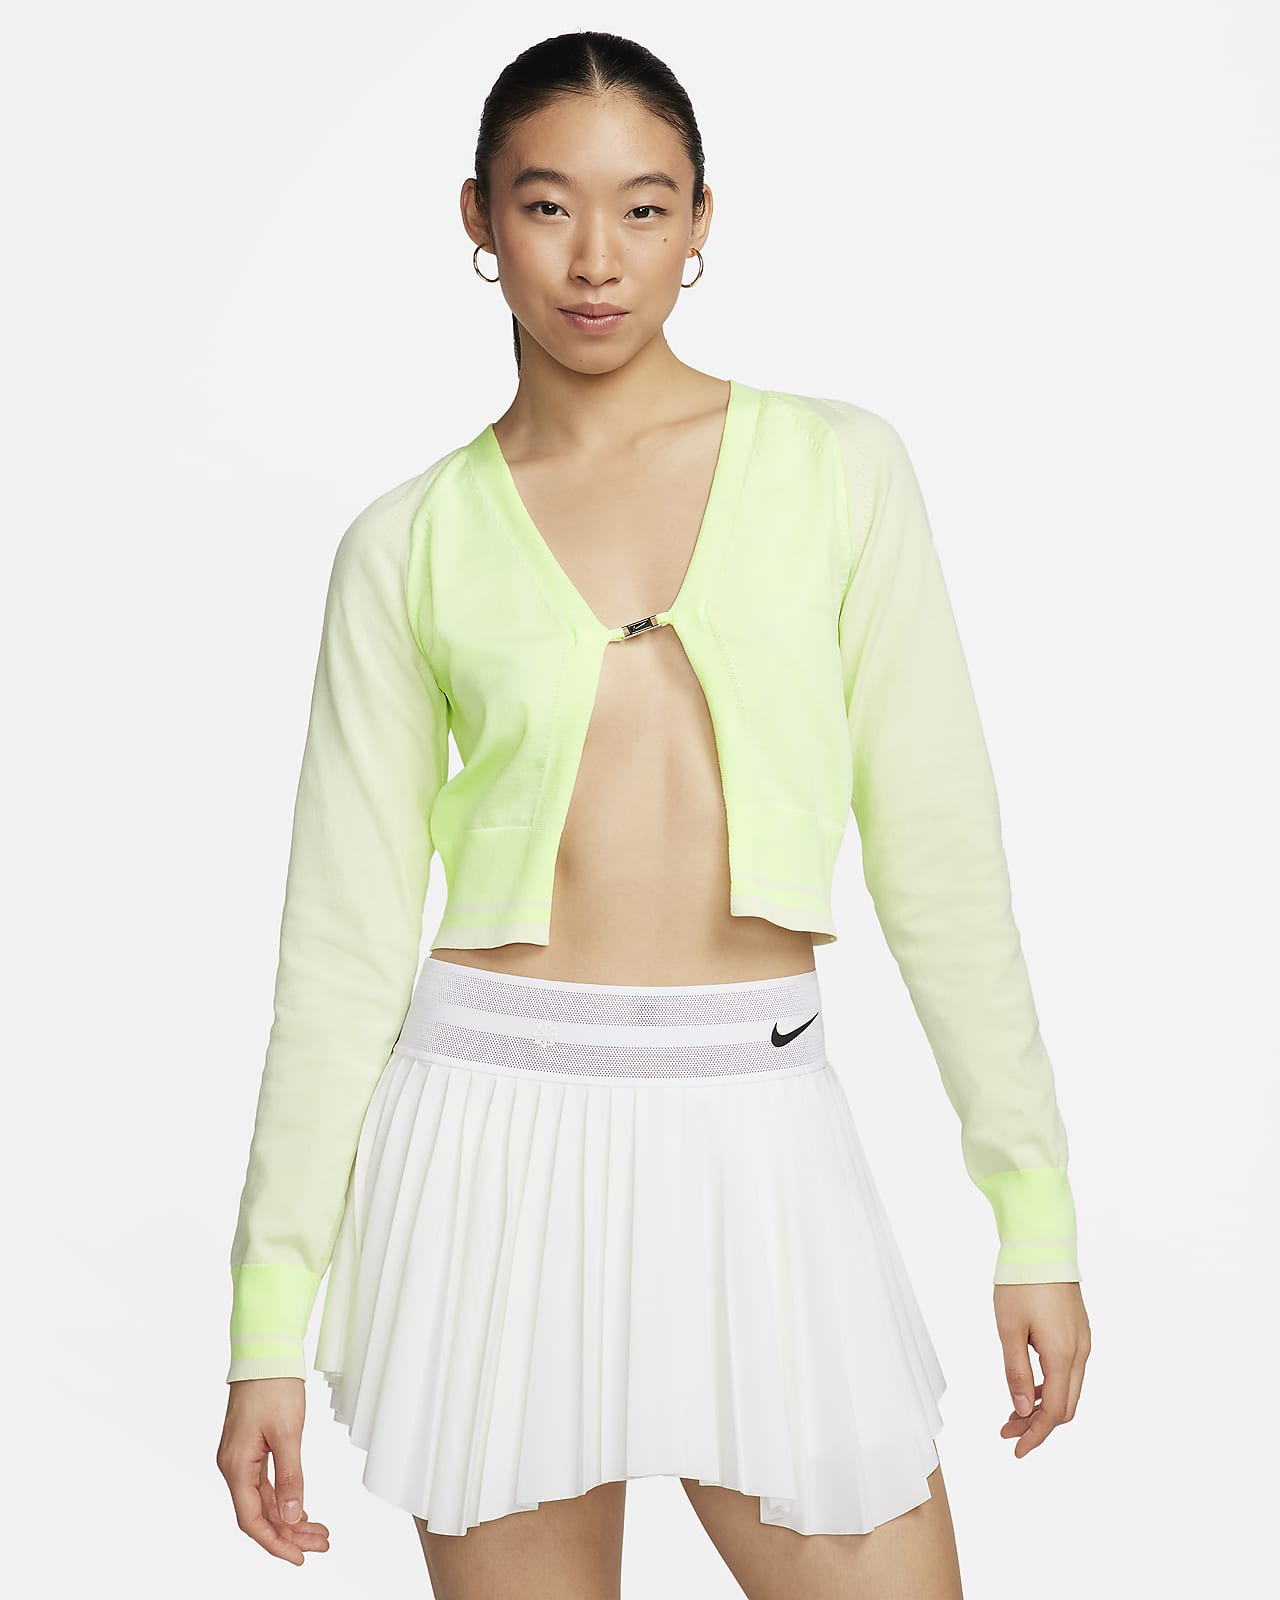 Nike Sportswear Women's Long-Sleeve Knit Cardigan